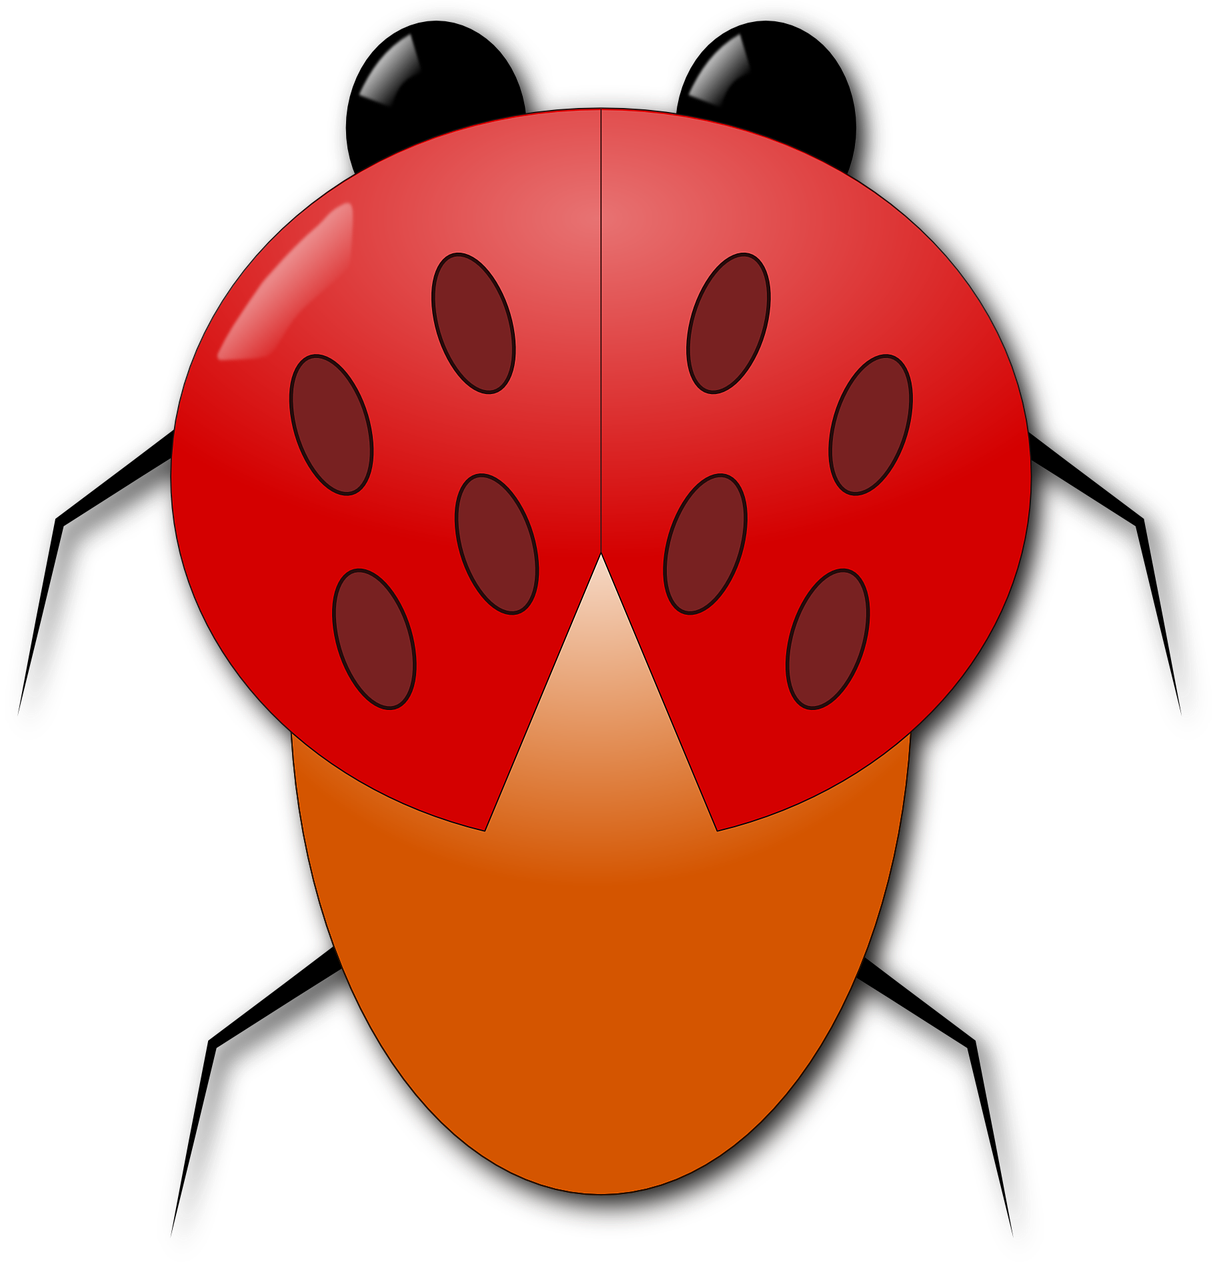 ladybug beetle nature free photo